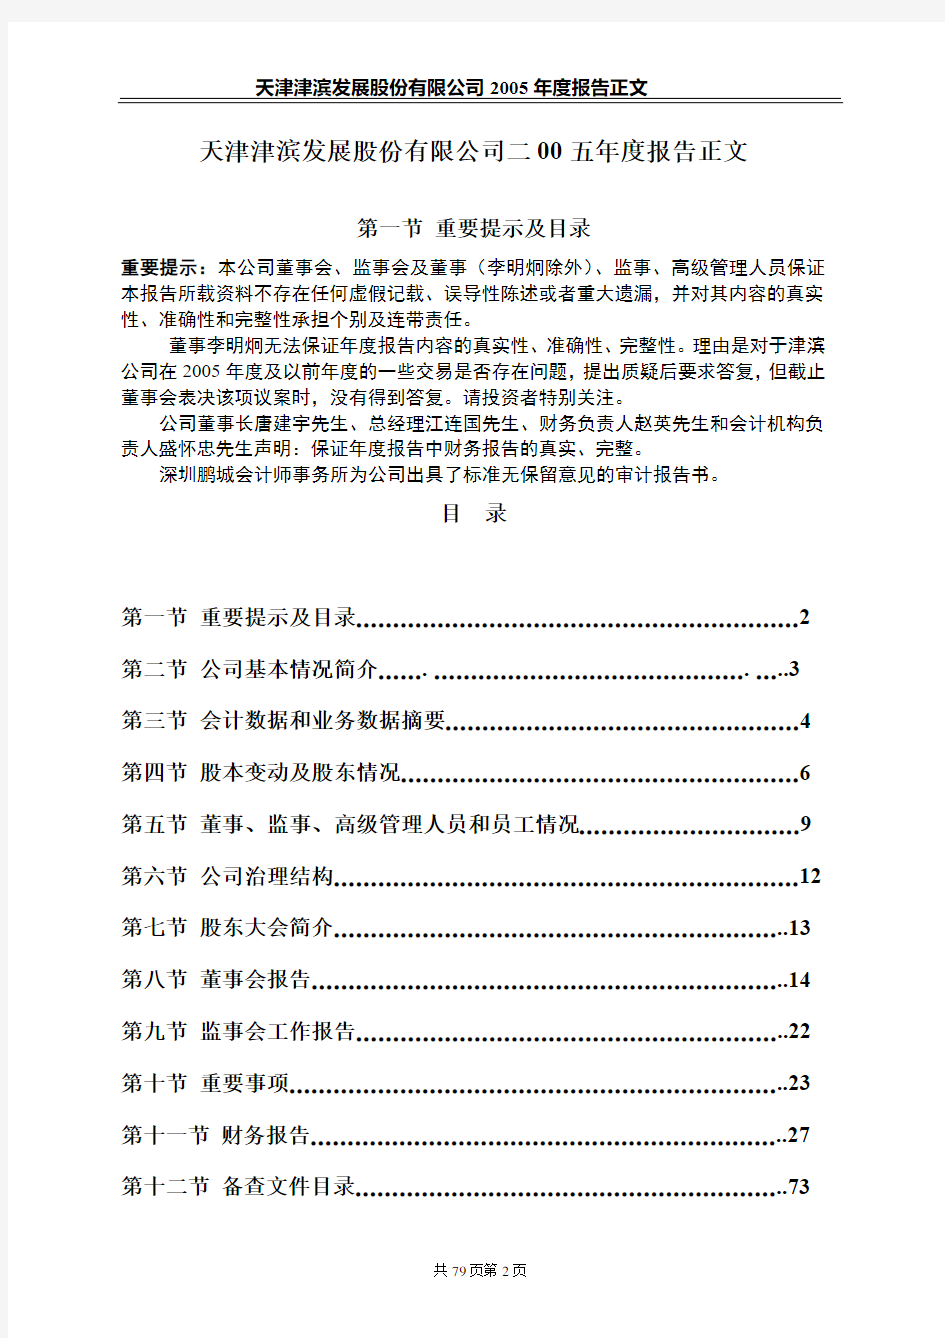 天津津滨发展股份有限公司2005年度报告正文